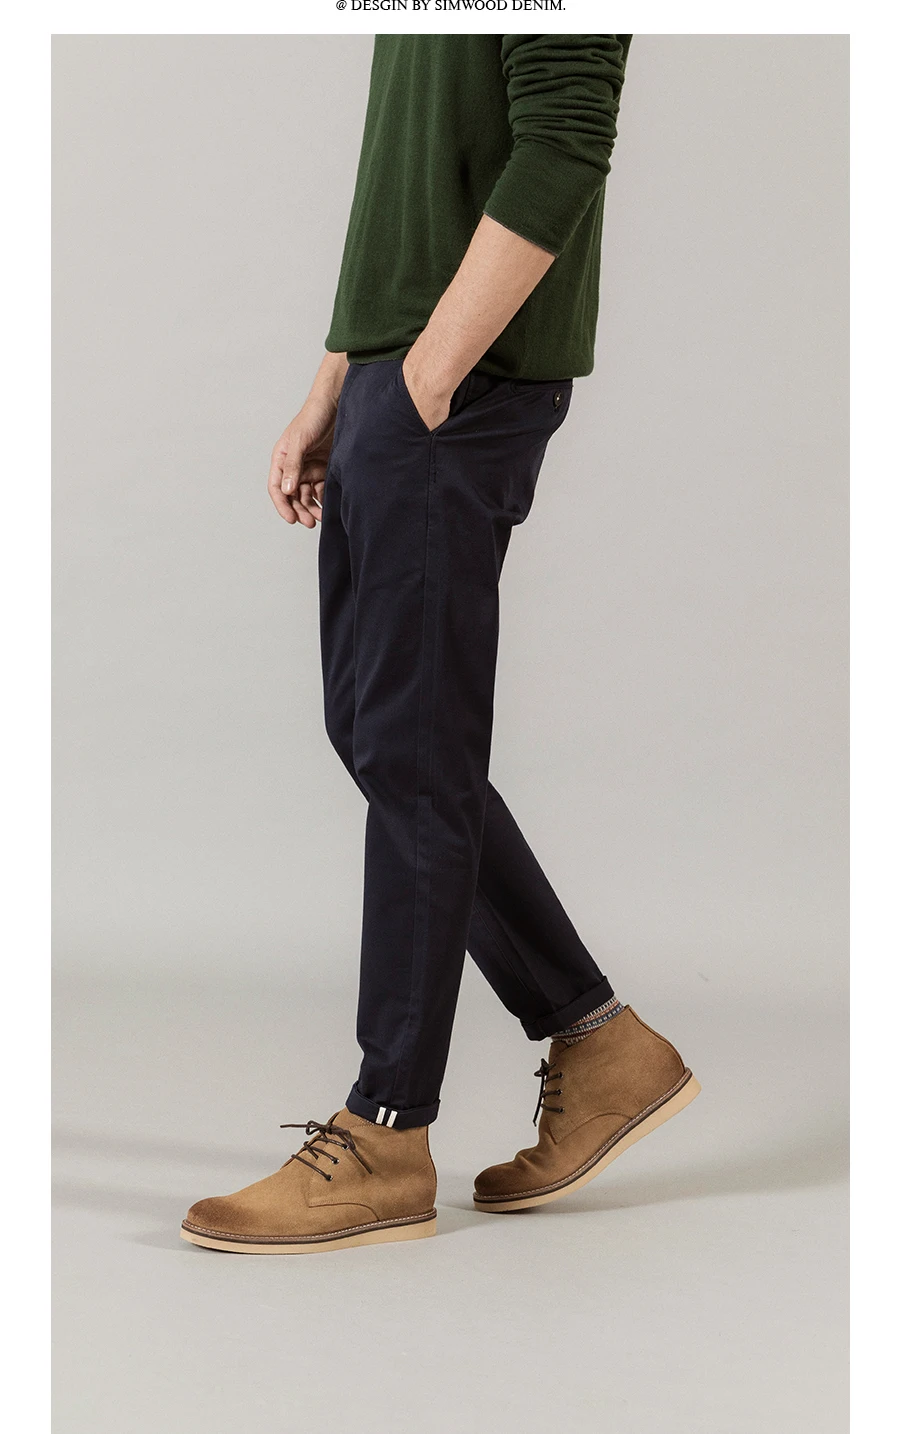 Мужские повседневные брюки из хлопка SIMWOOD, хлопковые светлые брюки облегающего покроя, 7 цветов, брендовая одежда больших размеров на осень и зима